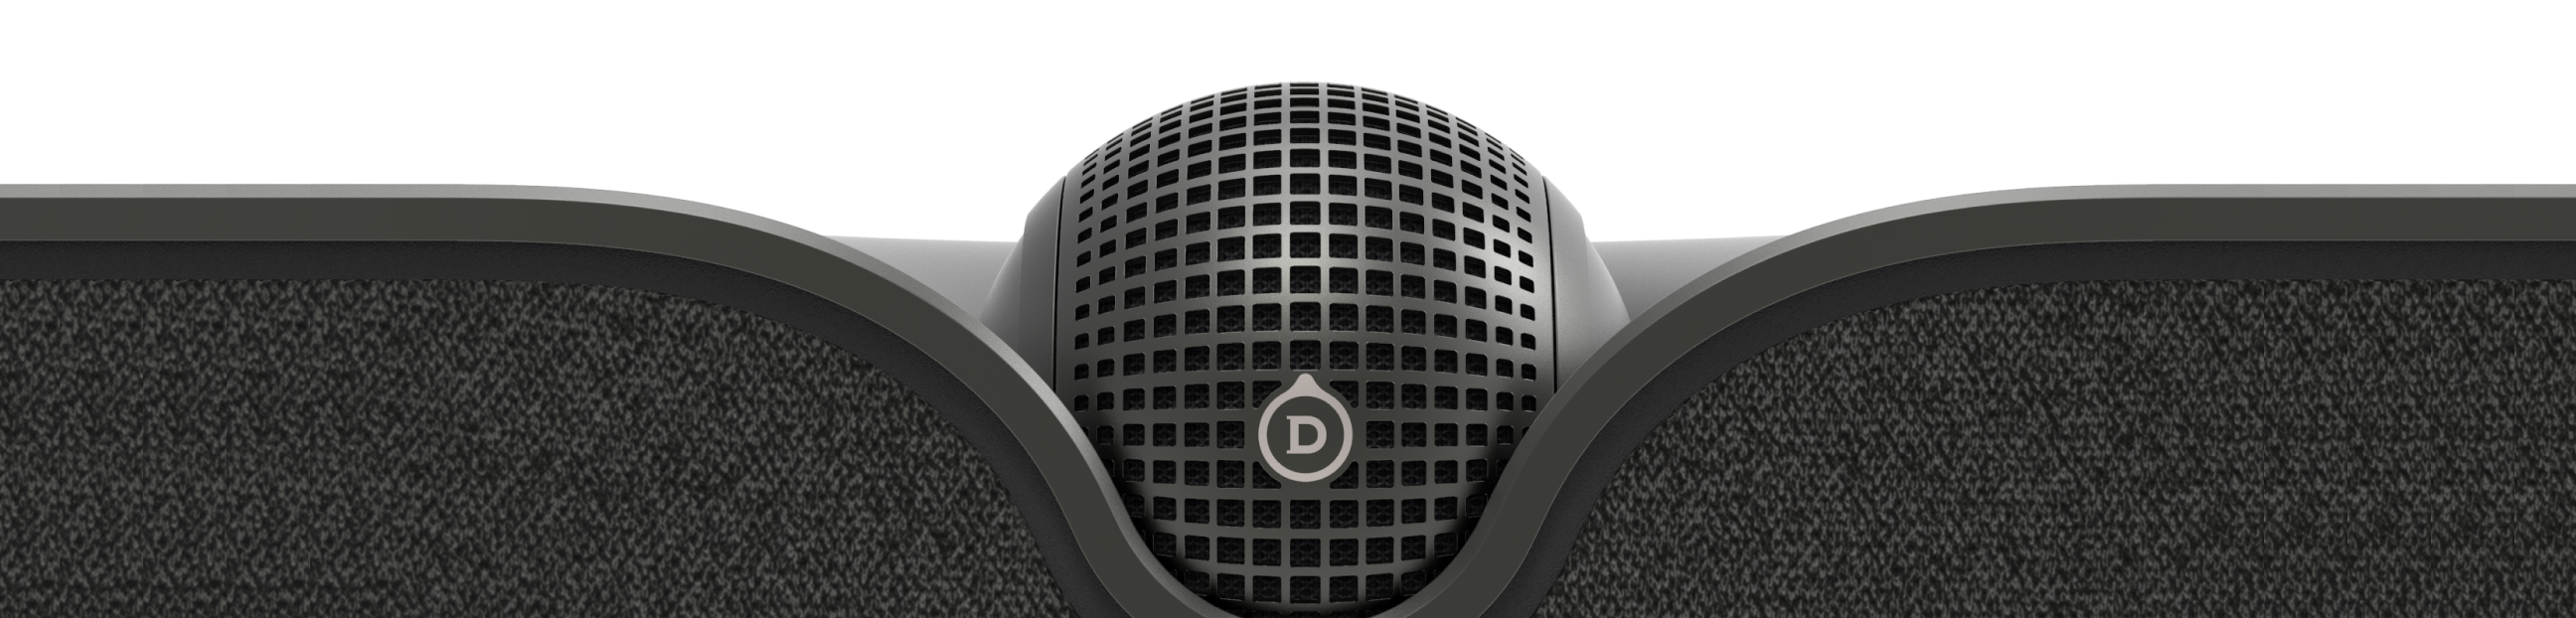 Comprar Devialet Dione Barra de sonido TV Dolby Atmos AirPlay 2 Dione